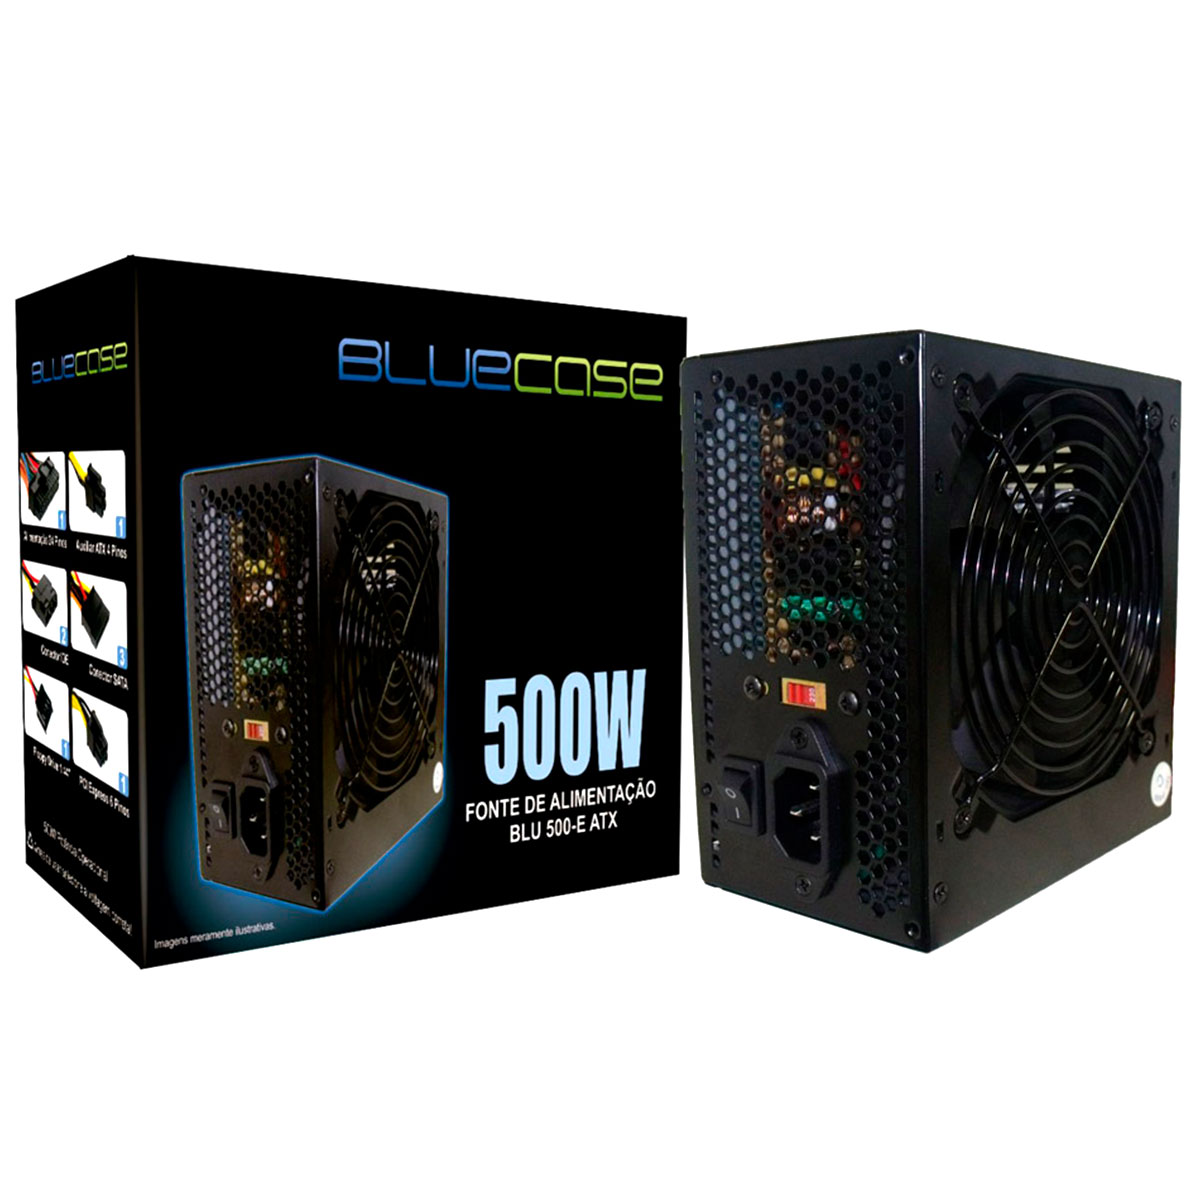 Fonte 500W Bluecase BLU500-E ATX c/ cabo de força